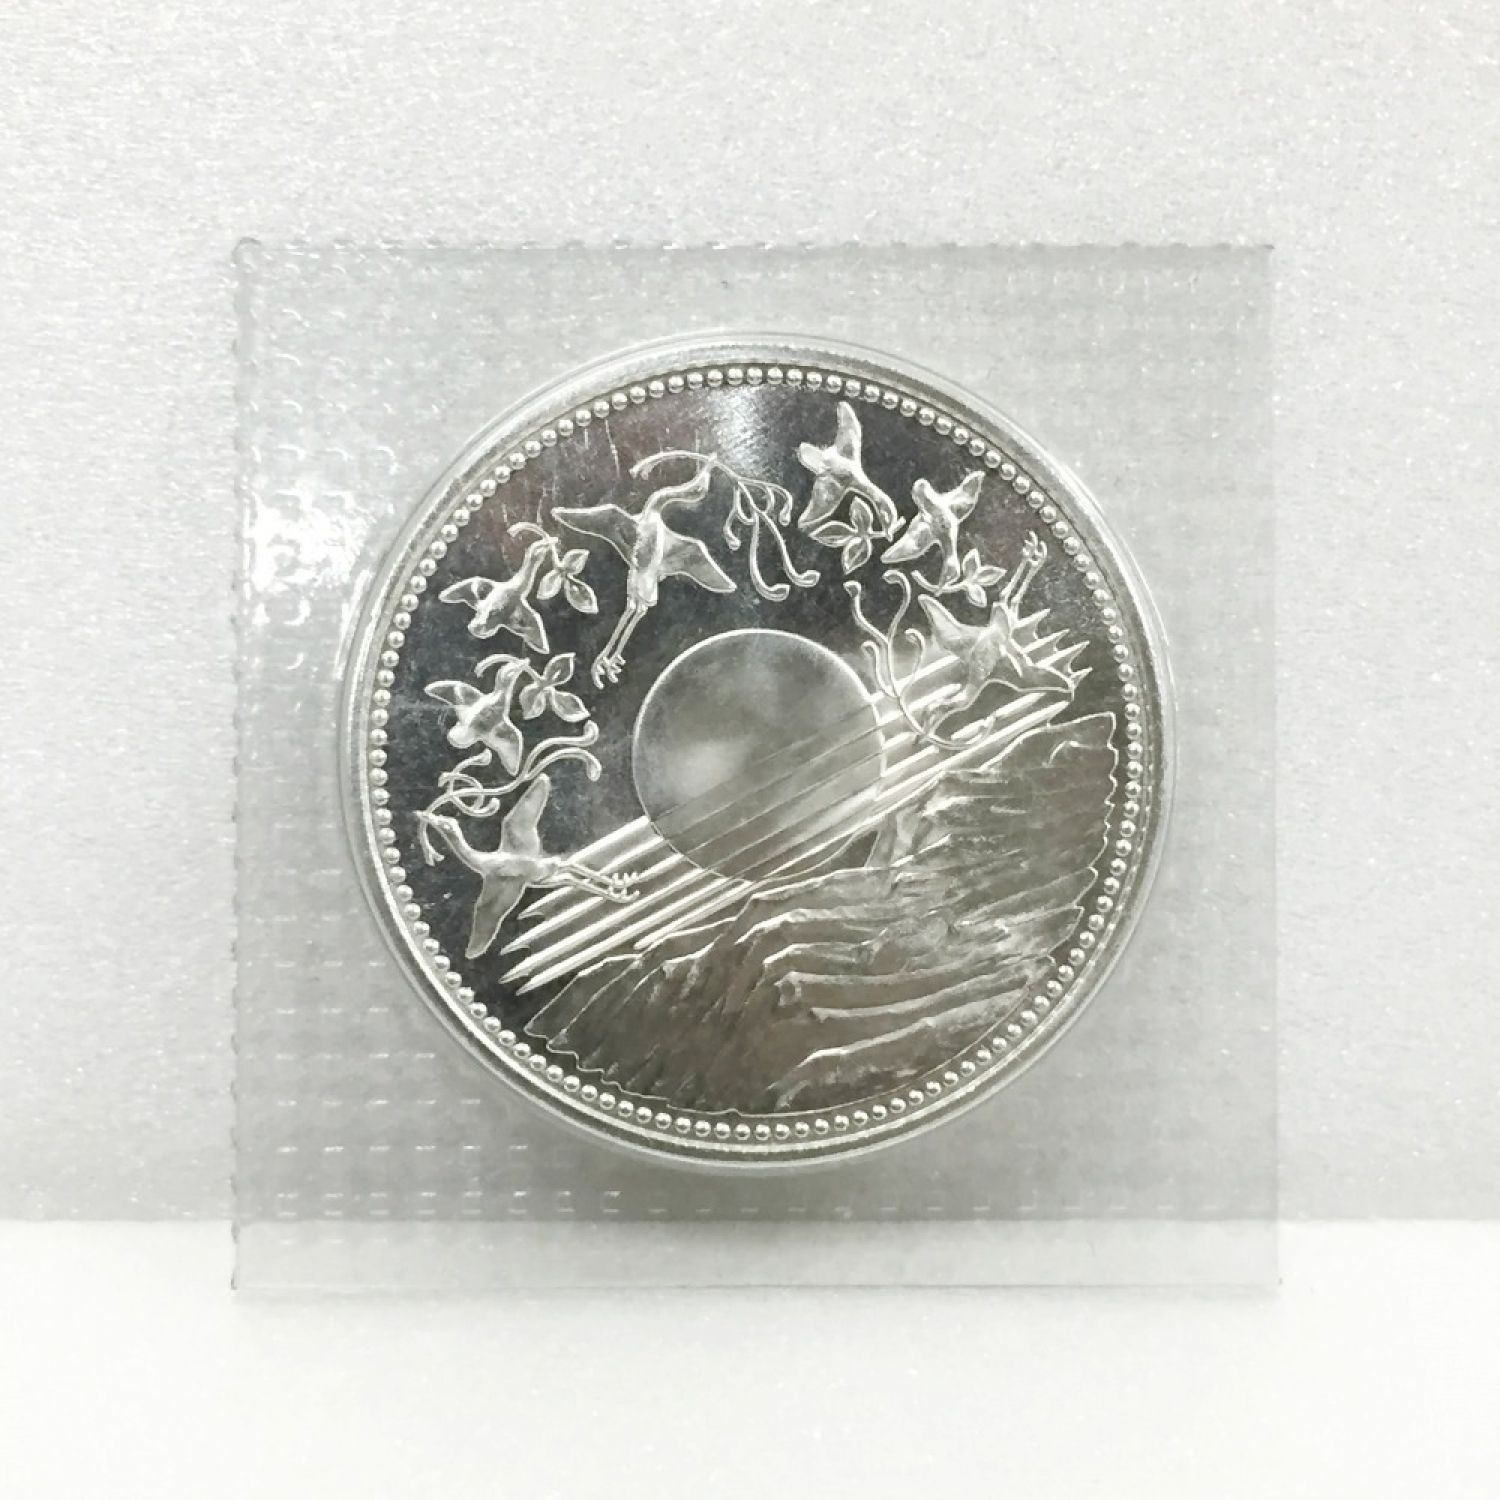 天皇陛下御在位60年記念 1万円銀貨 ブリスターバック入 記念硬貨 5十六菊花紋サイズ